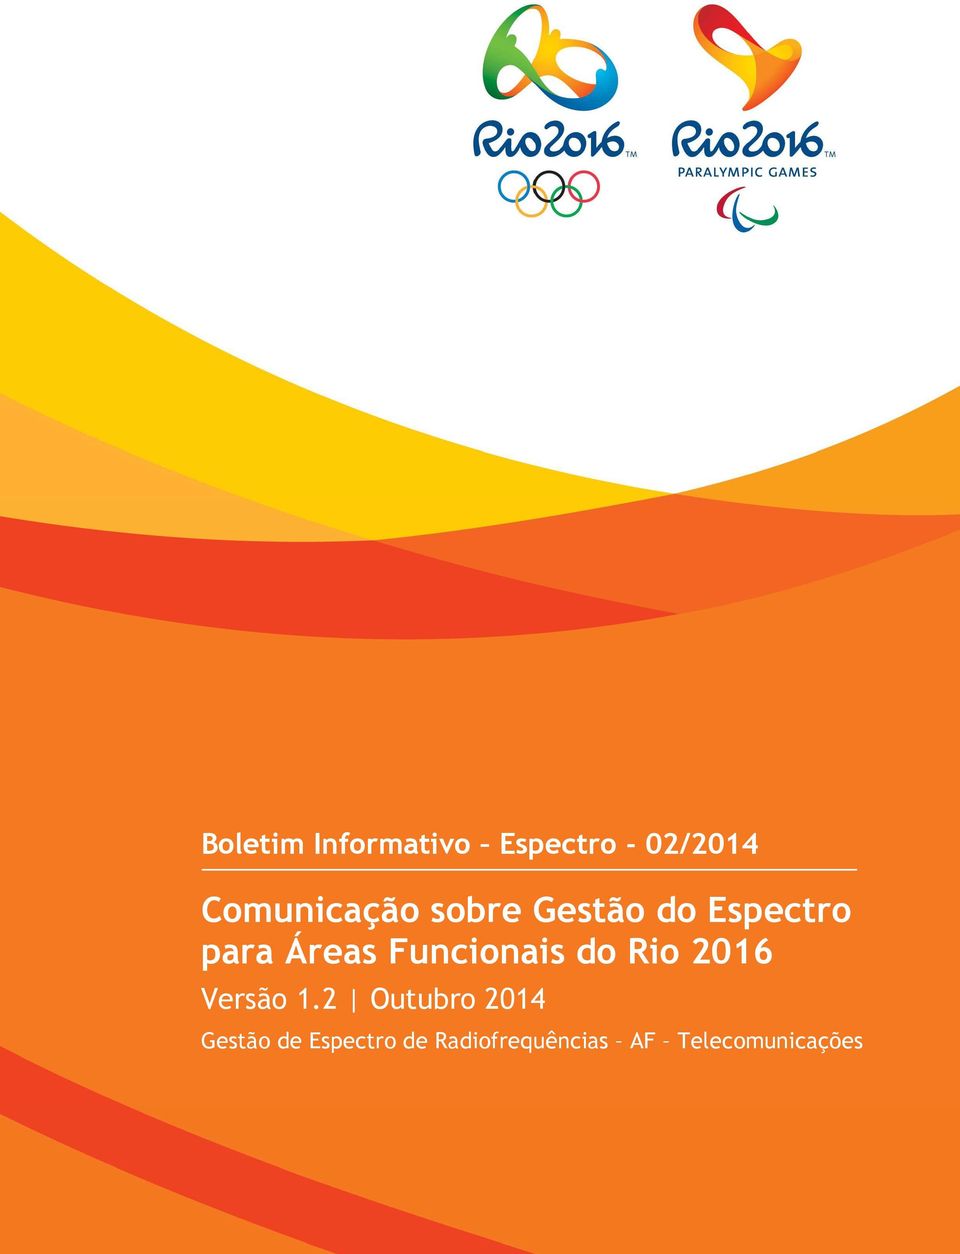 Funcionais do Rio 2016 Versão 1.